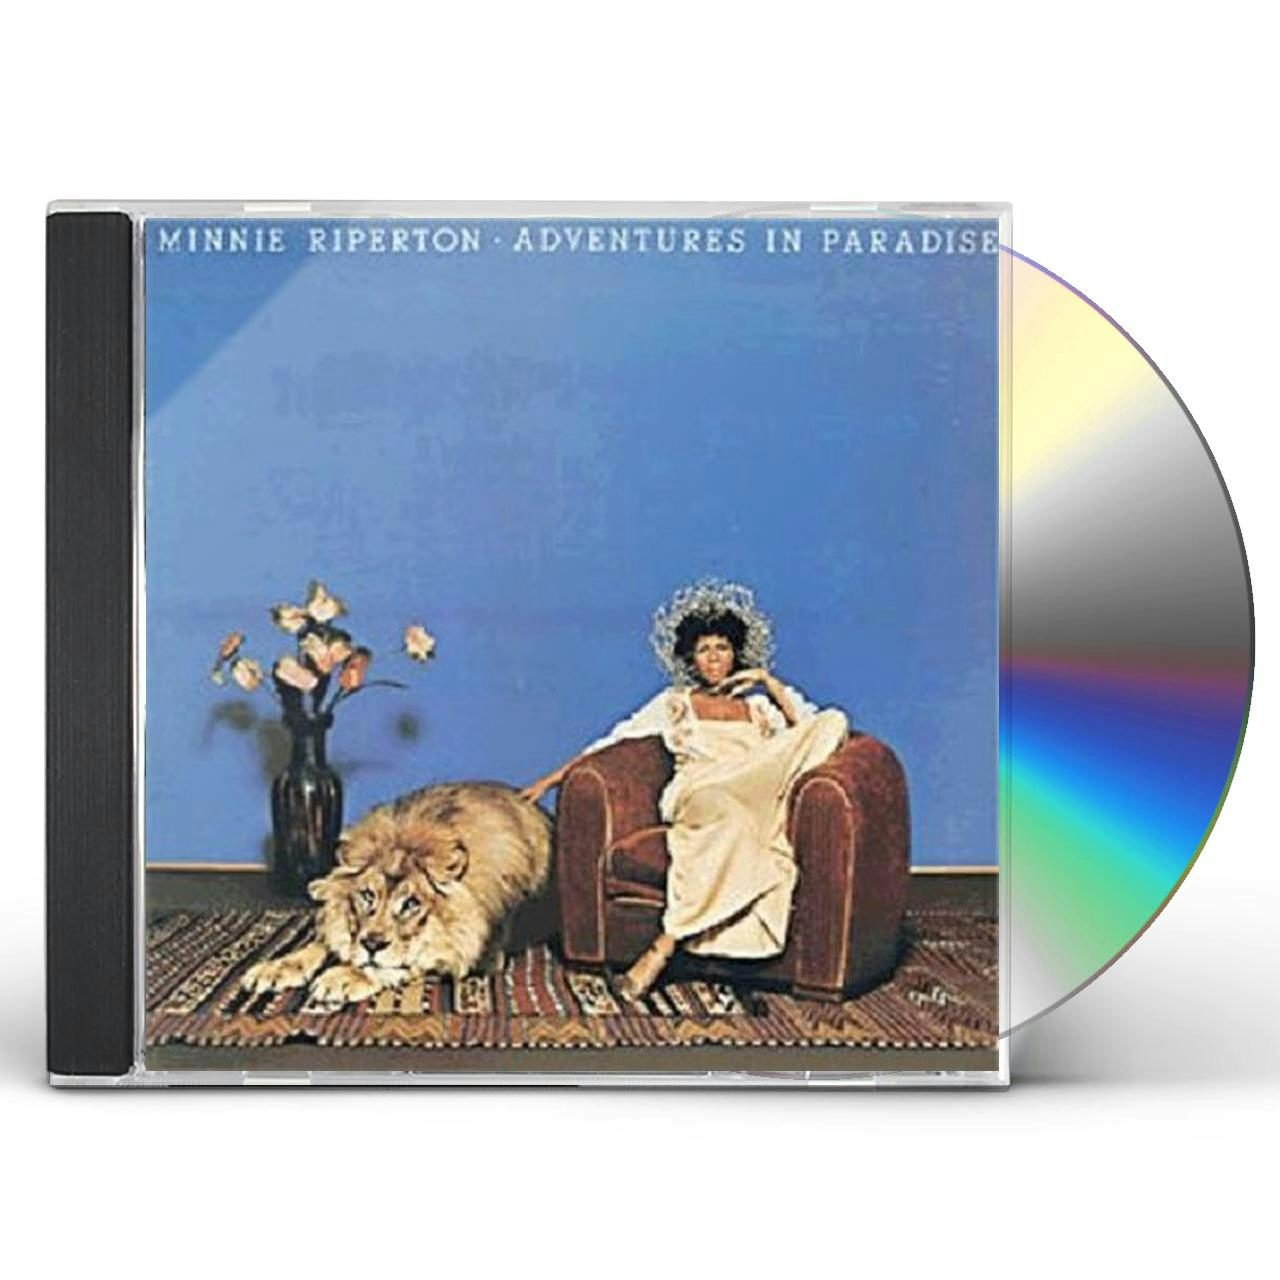 Minnie Riperton ADVENTURES IN PARADISE CD $11.49$9.99